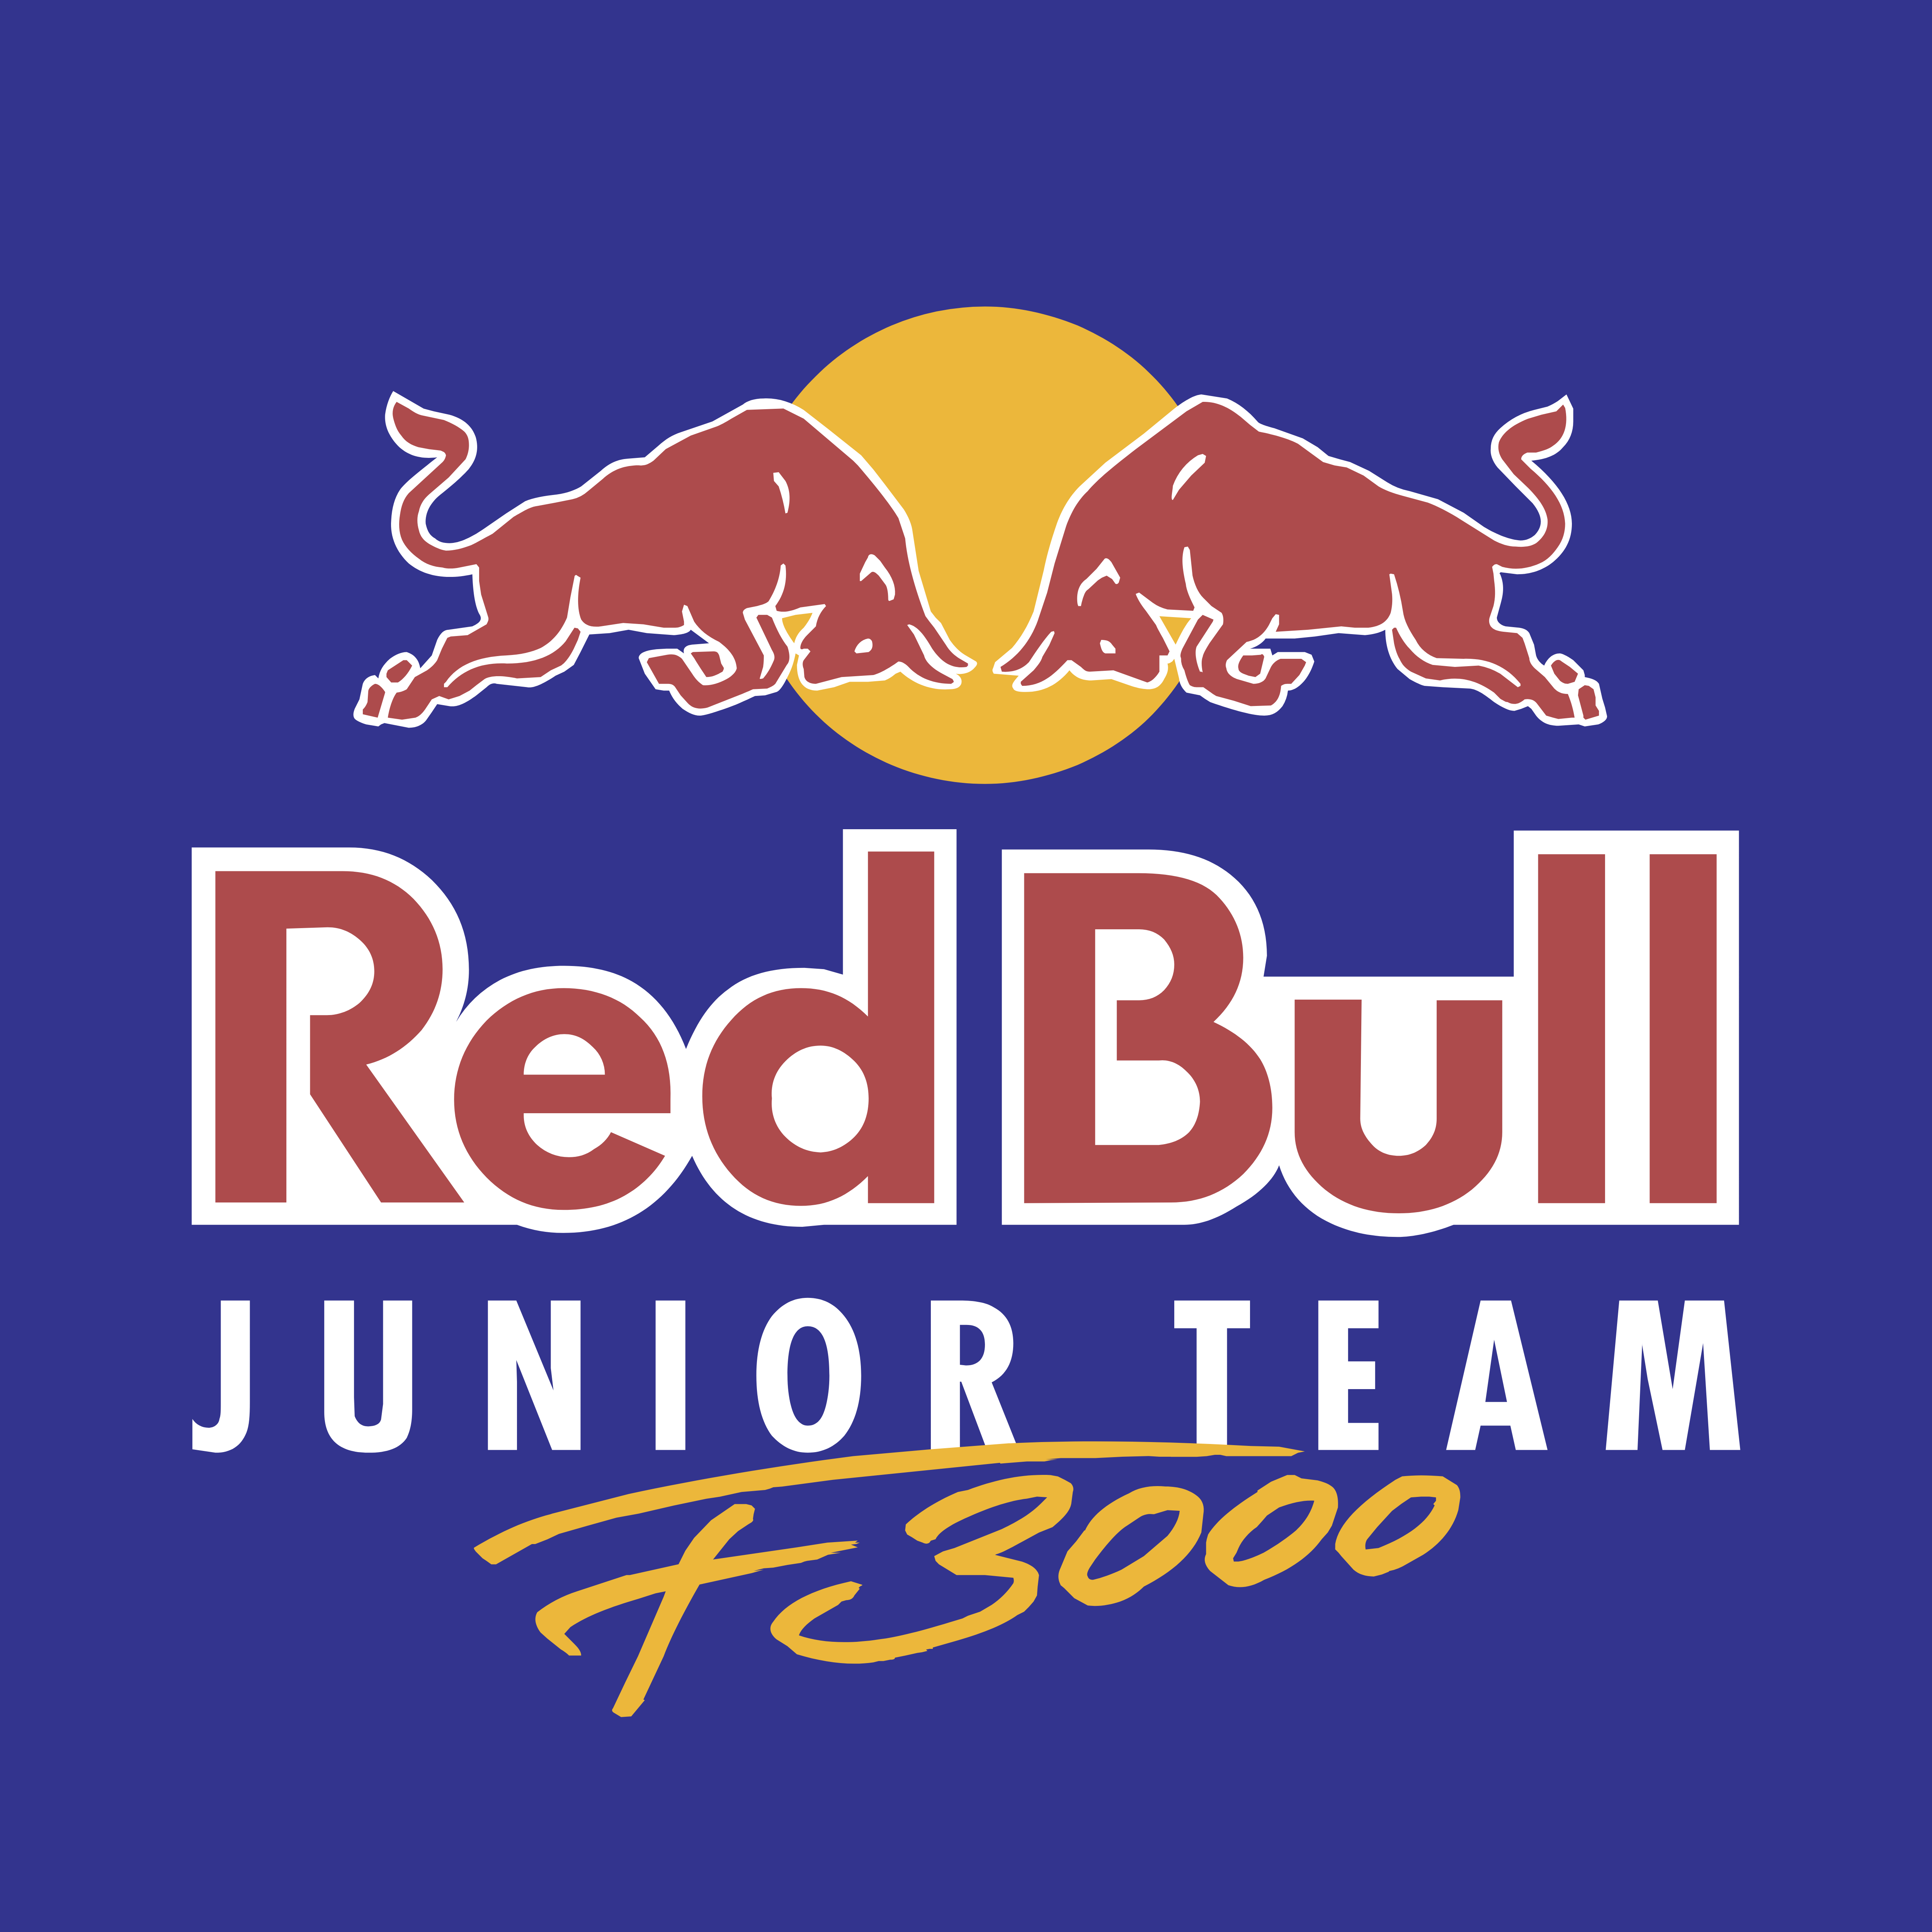 Red Bull Sport Logos Download